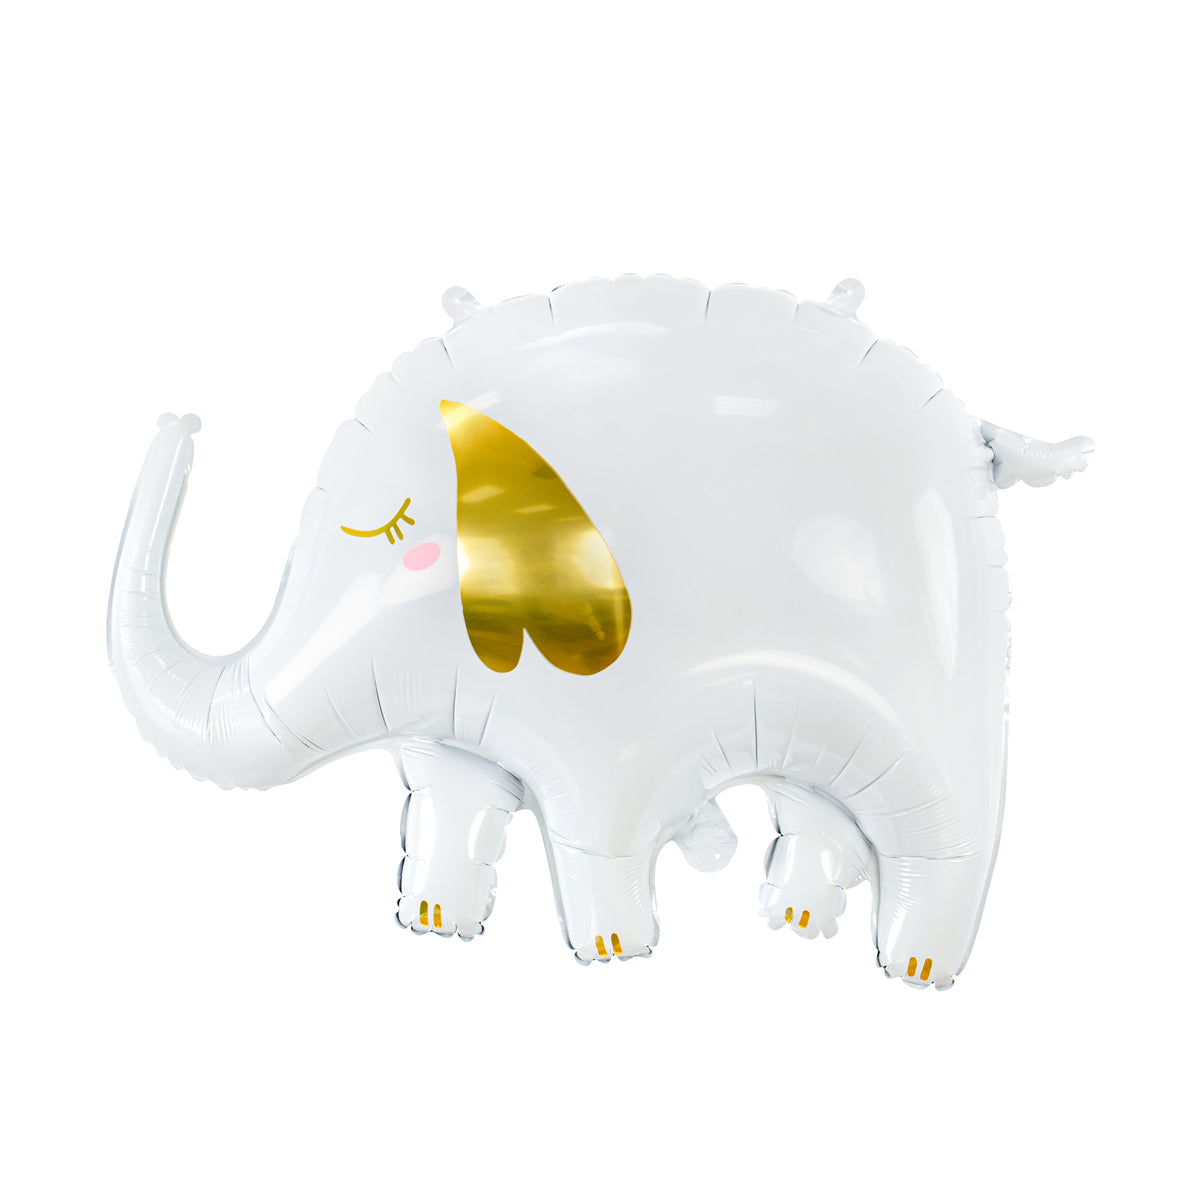 Coni per confetti tema elefantino - little elephant party favors -  Incartando Incantando